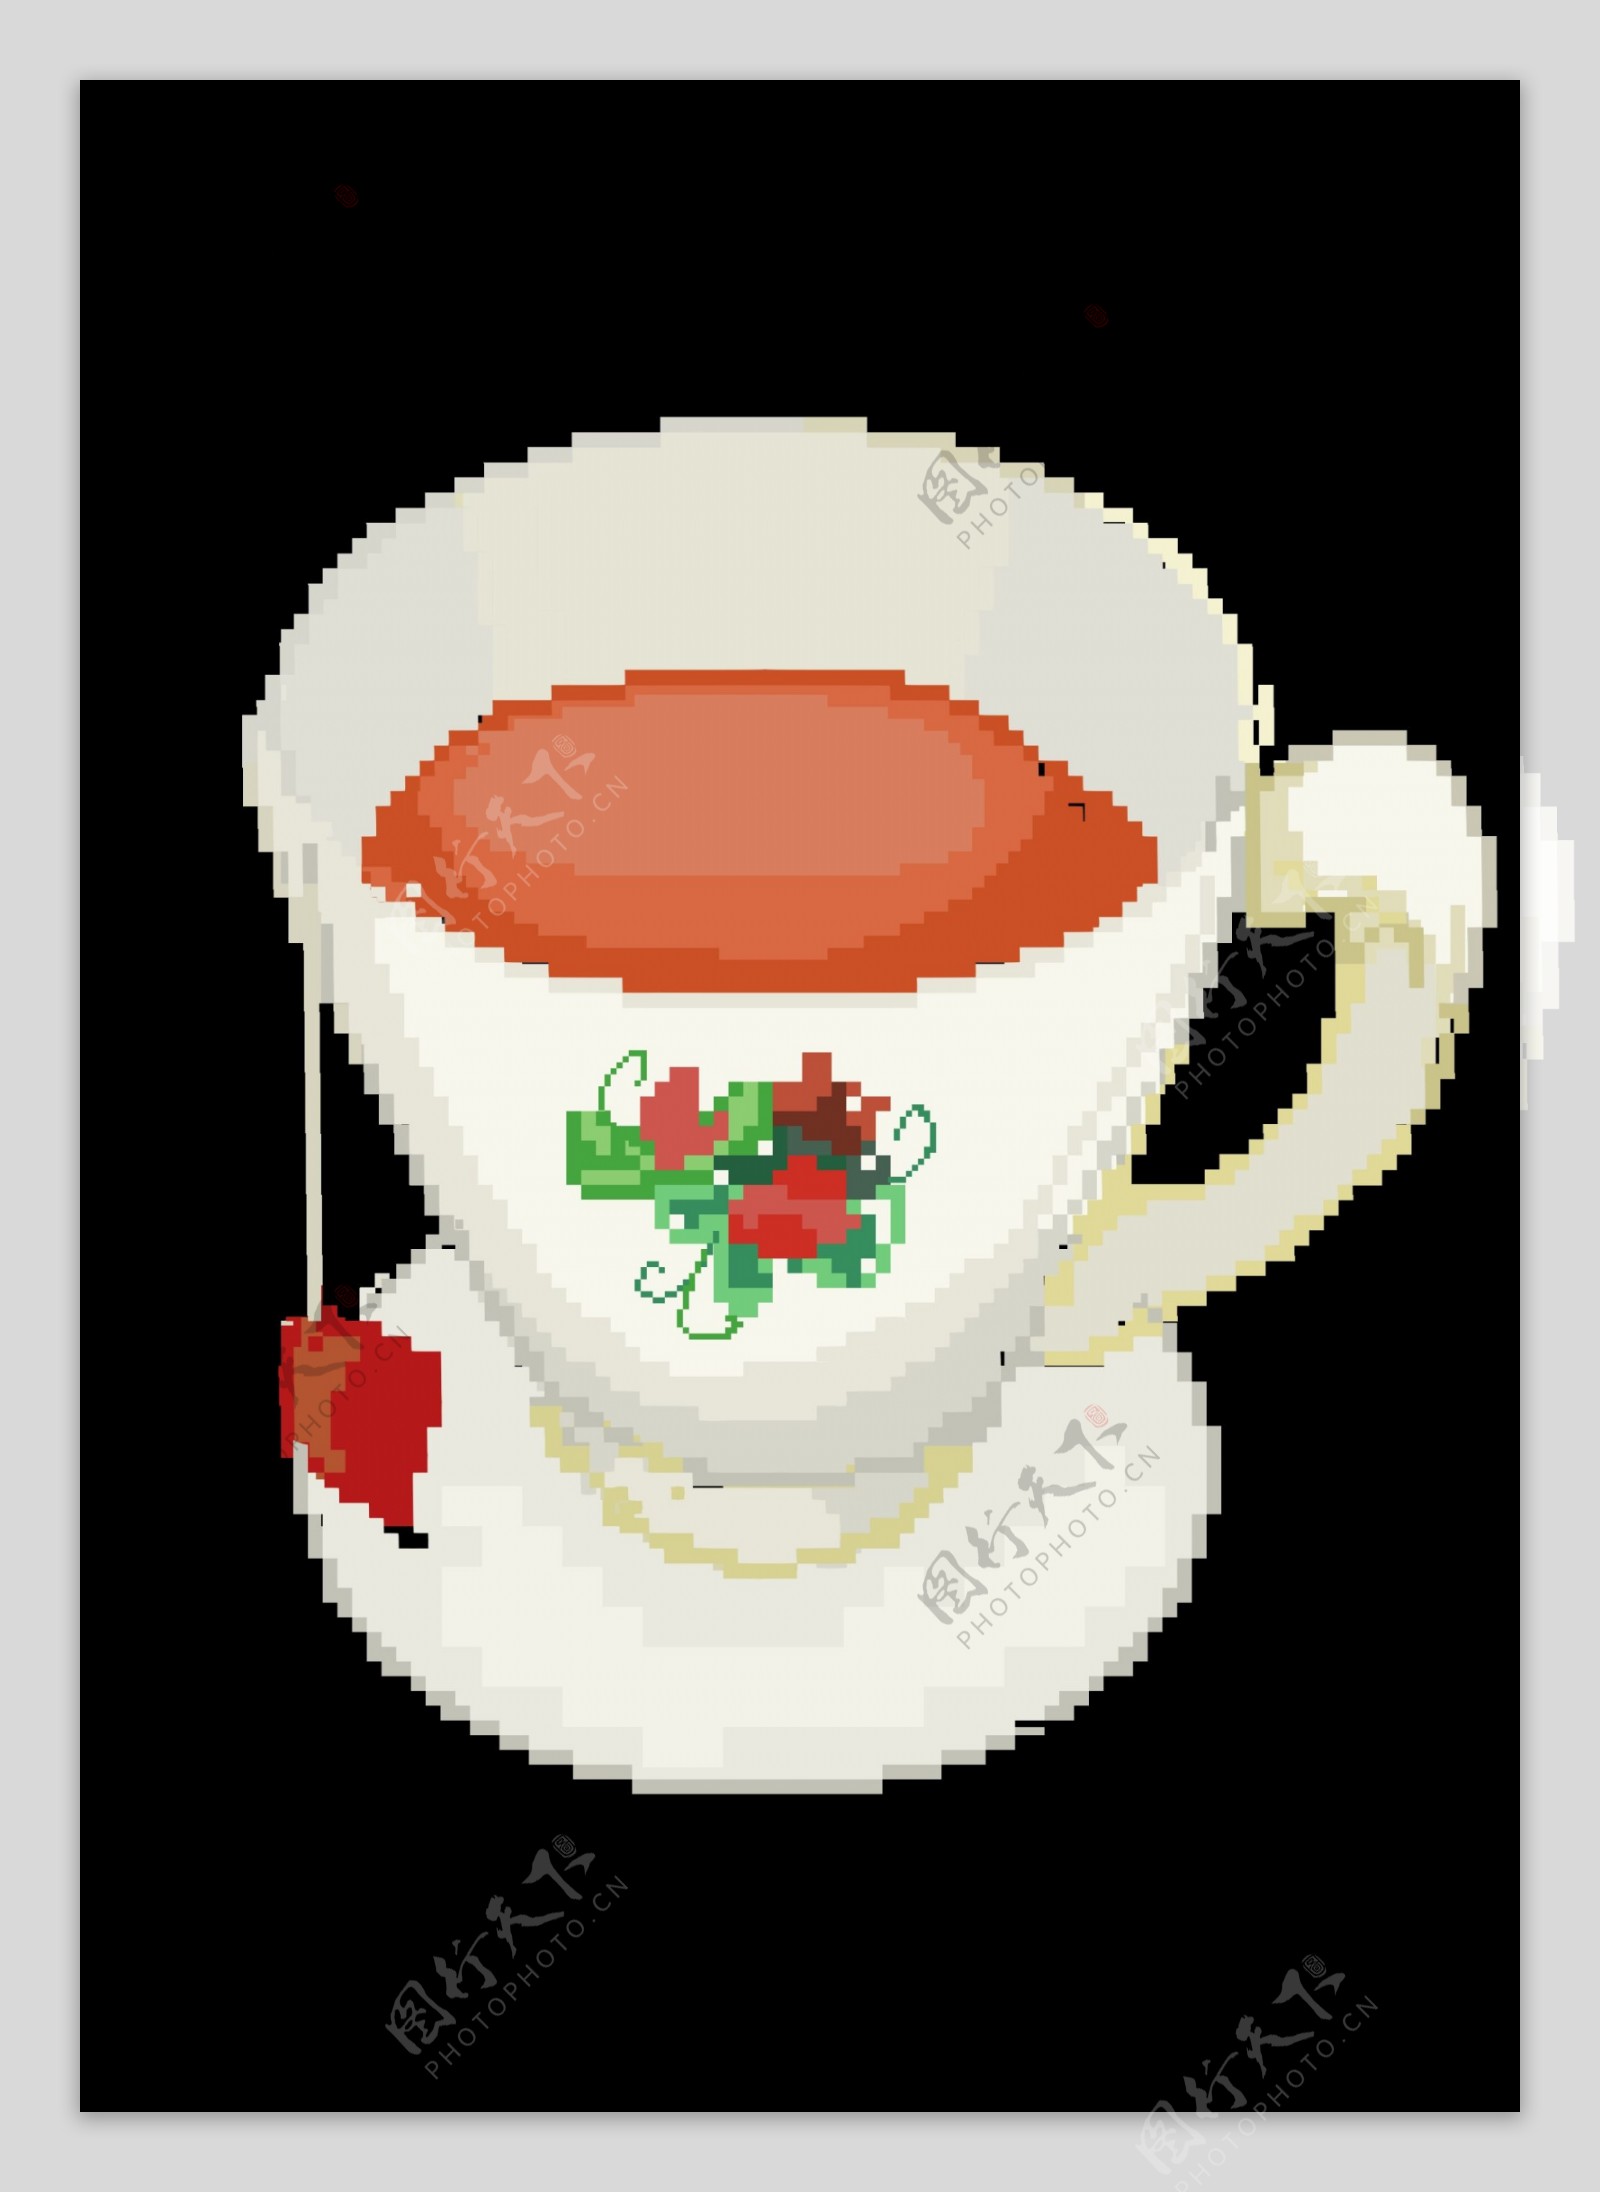 白色陶瓷杯装红茶